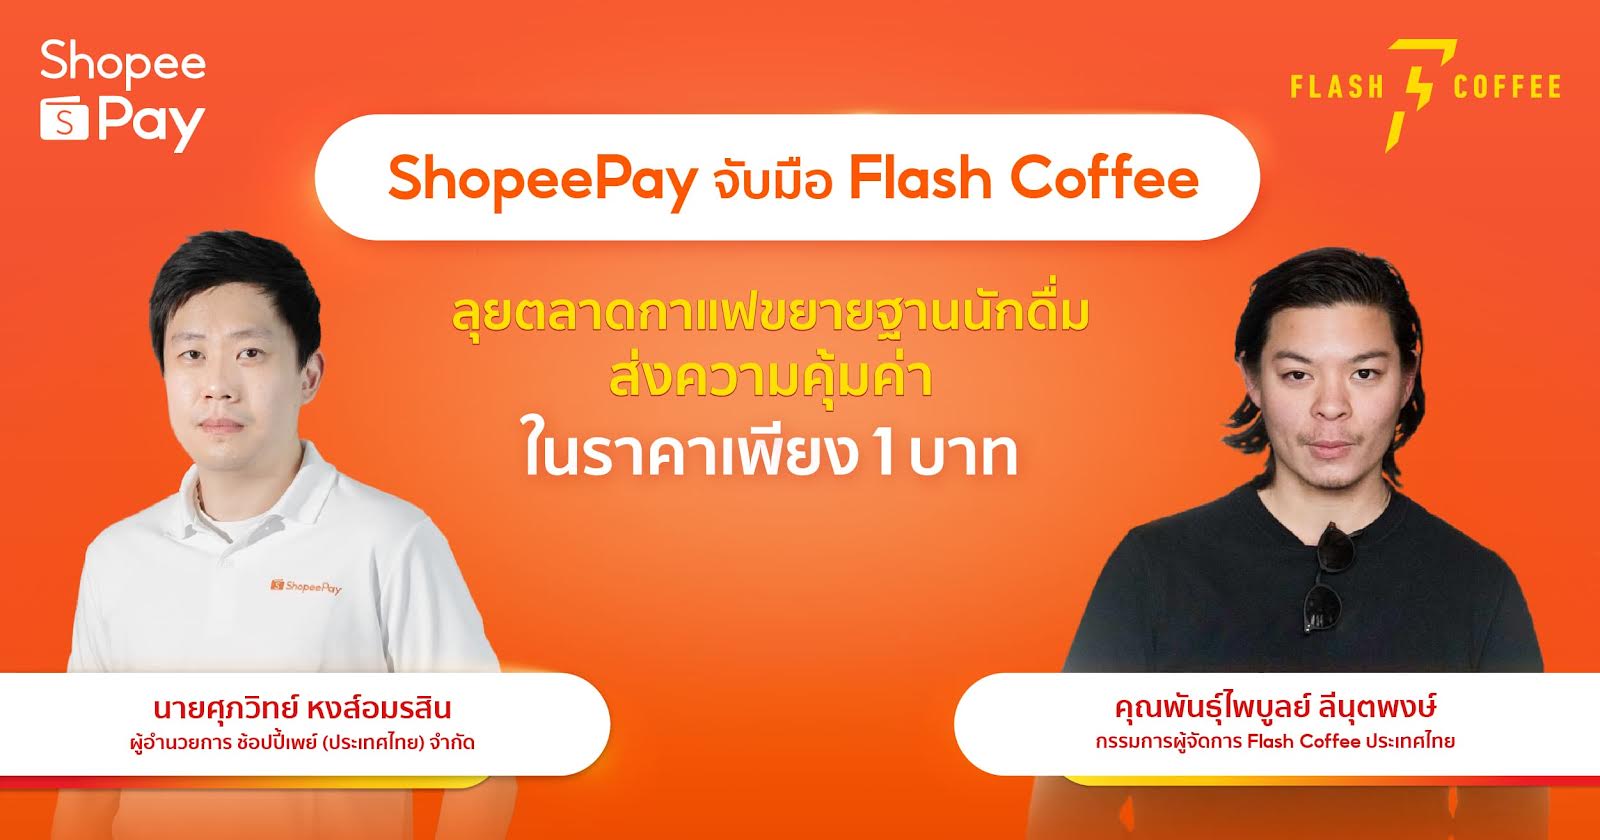 ‘ShopeePay’ ผนึกกำลัง ‘Flash Coffee’ ลุยตลาดกาแฟขยายฐานนักดื่ม เดินเกมรุกดันยอดขายเติบโต ส่งกาแฟคุณภาพ เริ่มต้นเพียง 1 บาท